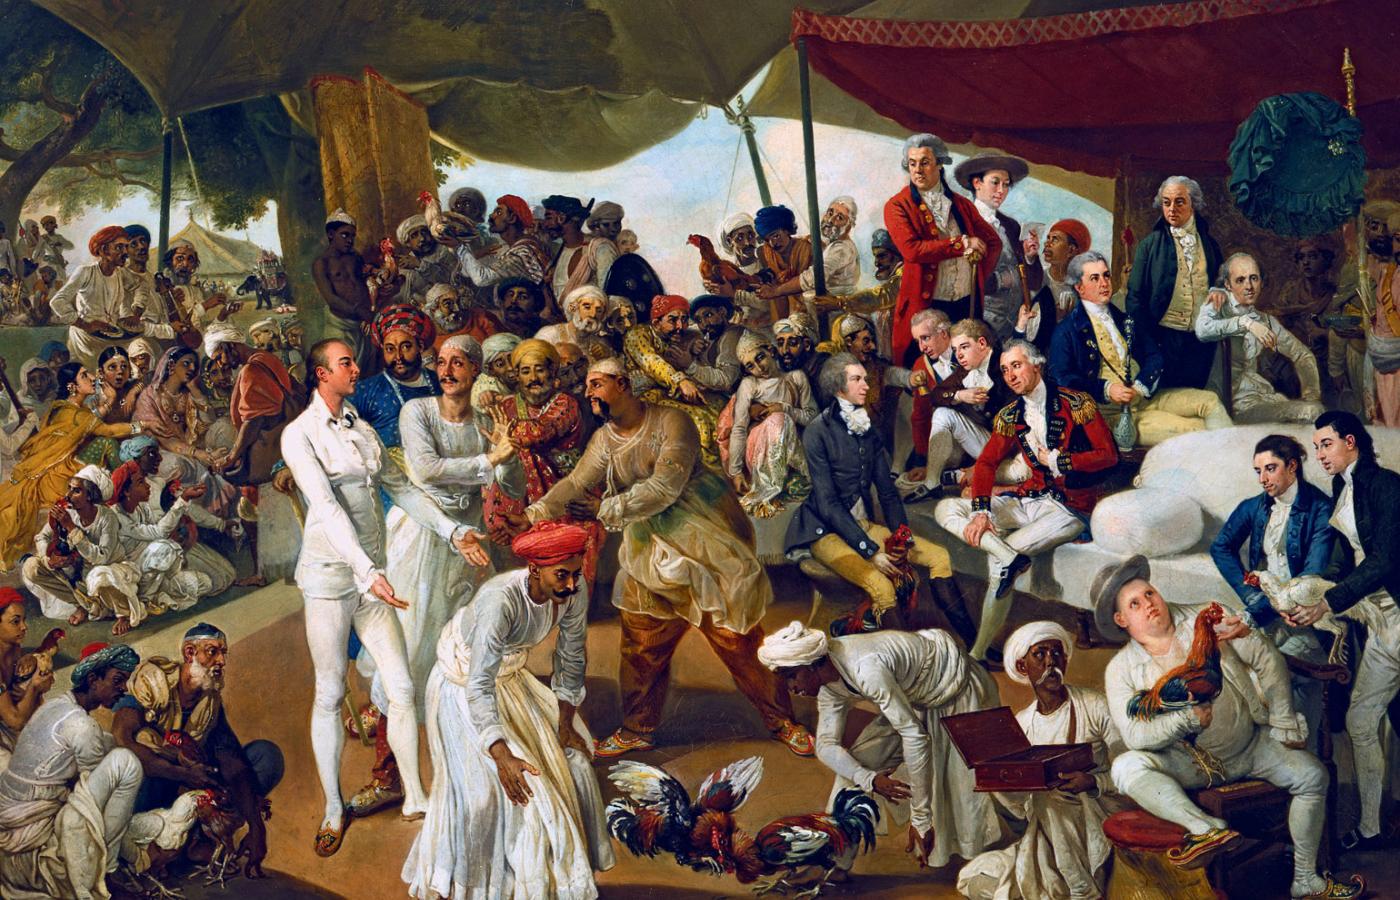 „Pułkownik Mordaunt oglądający walkę kogutów” – w otoczeniu urzedników Kompanii Wschodnioindyjskiej, obraz olejny z 1785 r. W XIX w. Indiami – jako kolonią Korony – zarządzało tylko ok. 900 urzędników brytyjskich.